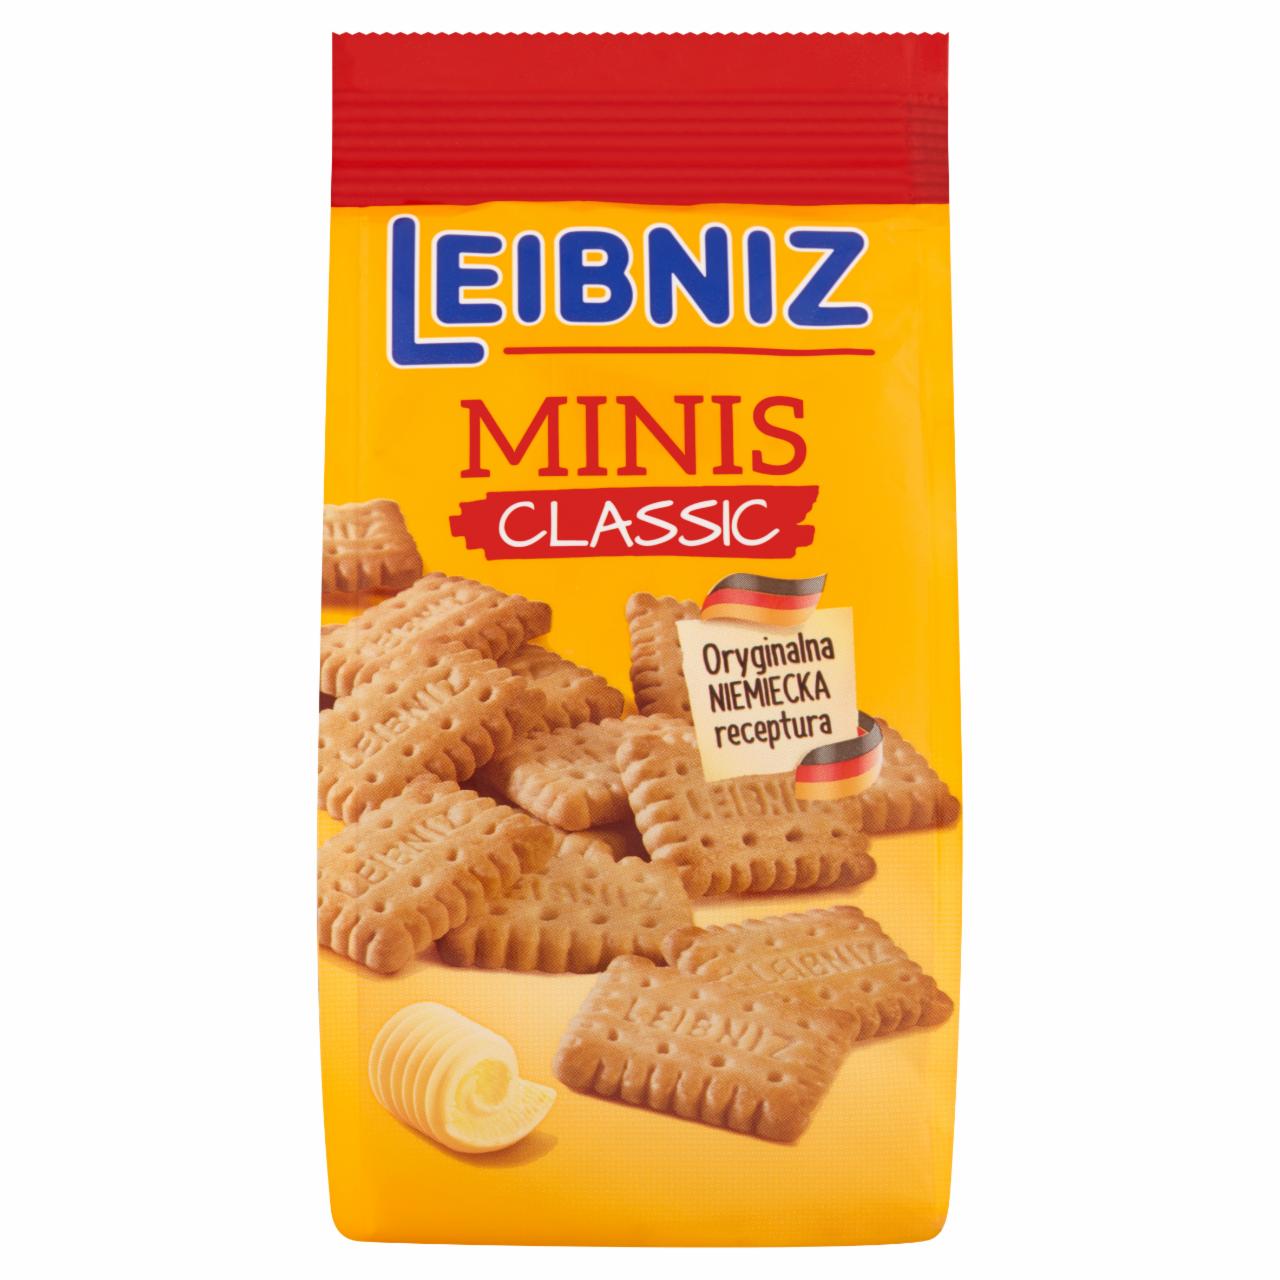 Zdjęcia - Leibniz Minis Classic Herbatniki maślane 120 g